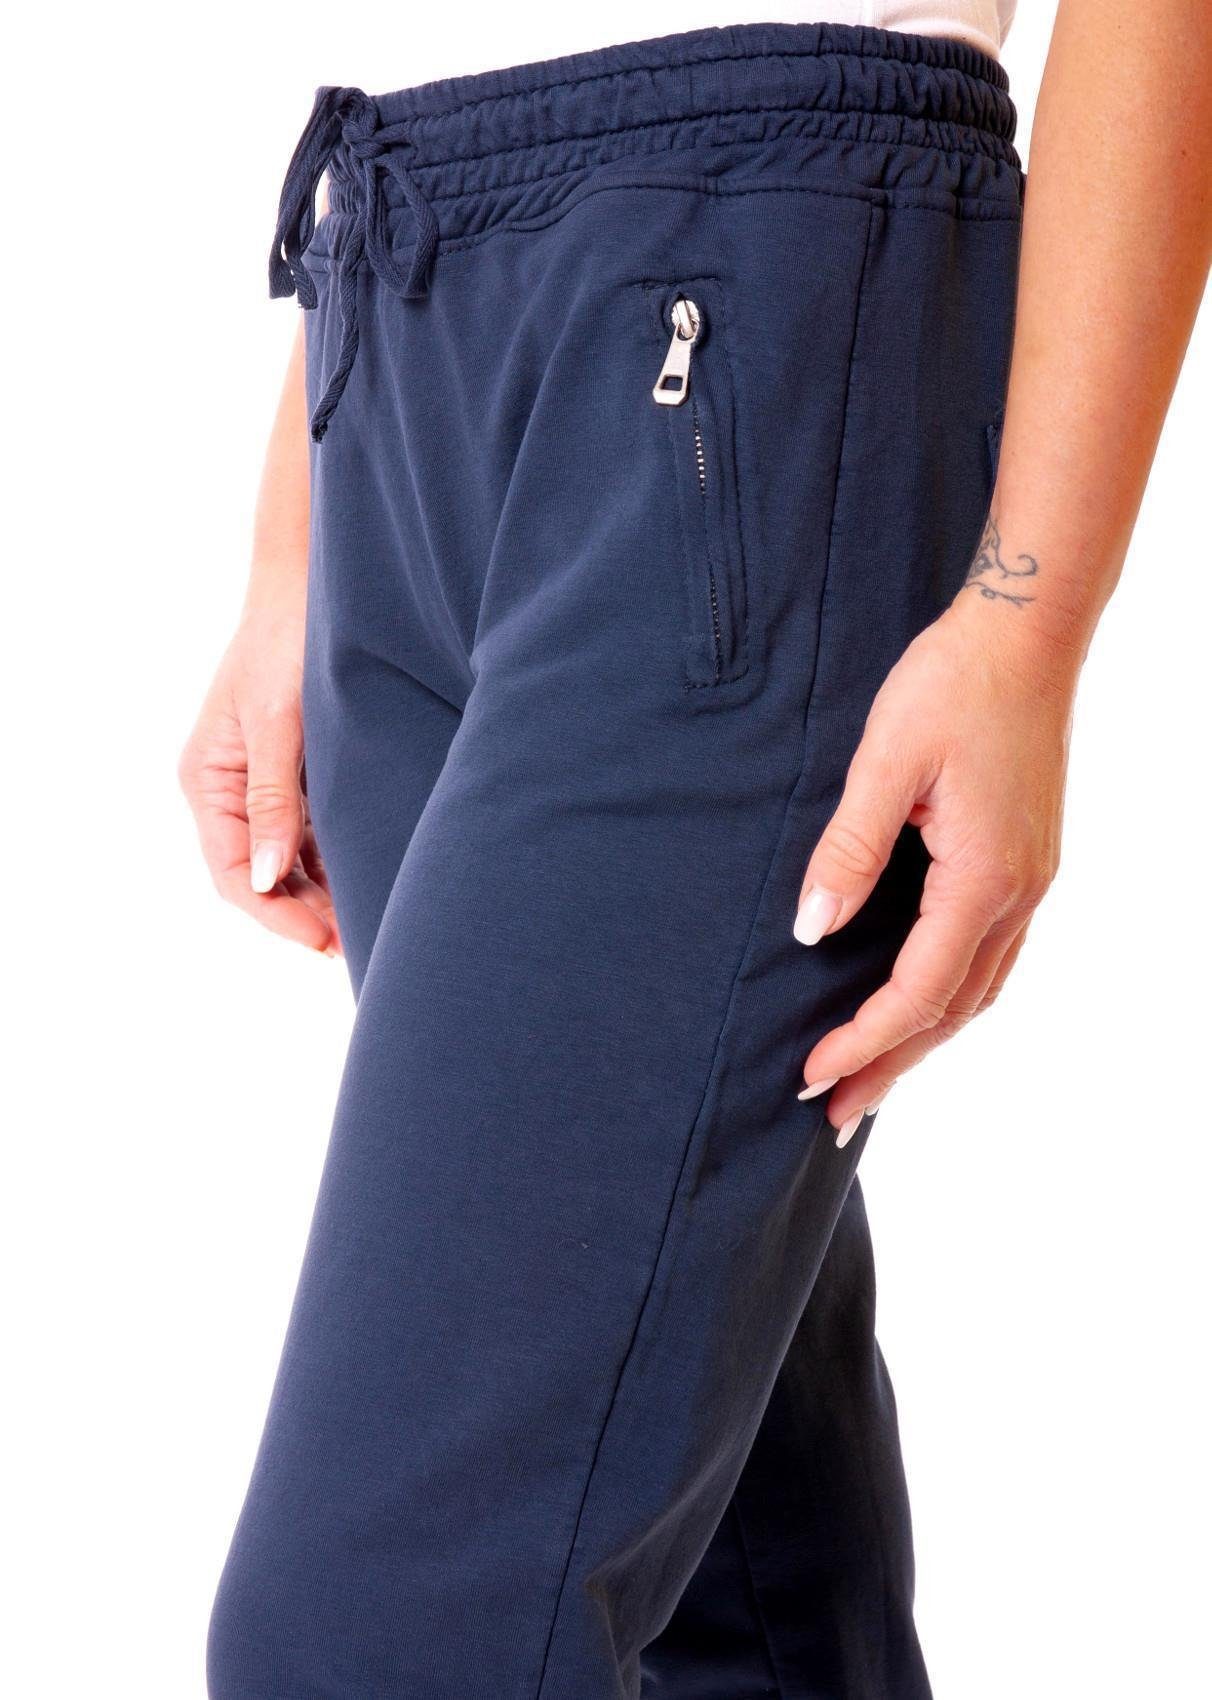 Fashion Zip-Taschen Sweathose dunkelblau 8141 Young Easy Baumwoll mit Sweathose